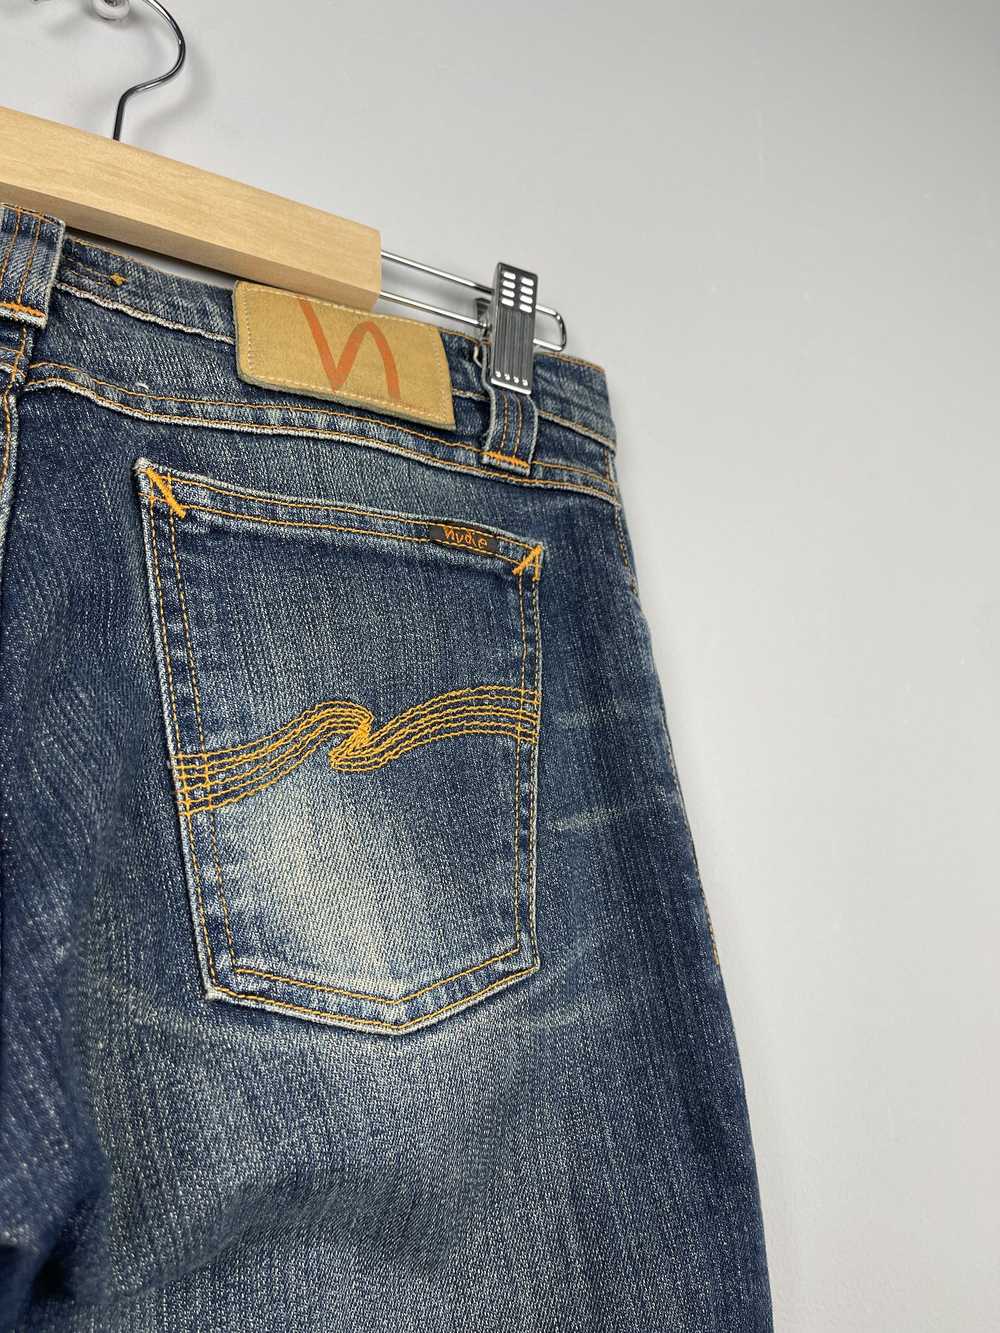 Nudie Jeans × Streetwear Nudie Jeans Slim Jeans - image 10